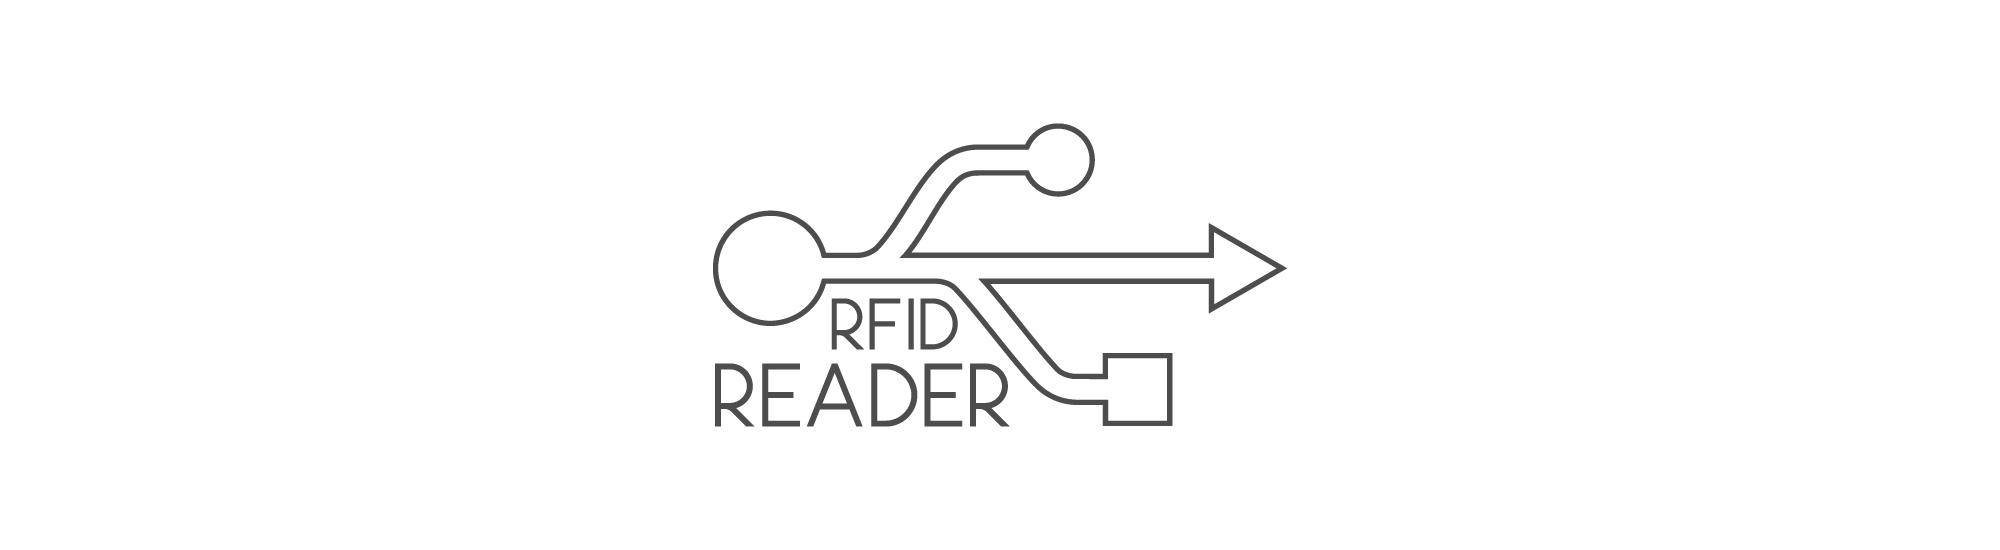 USB RFID reader